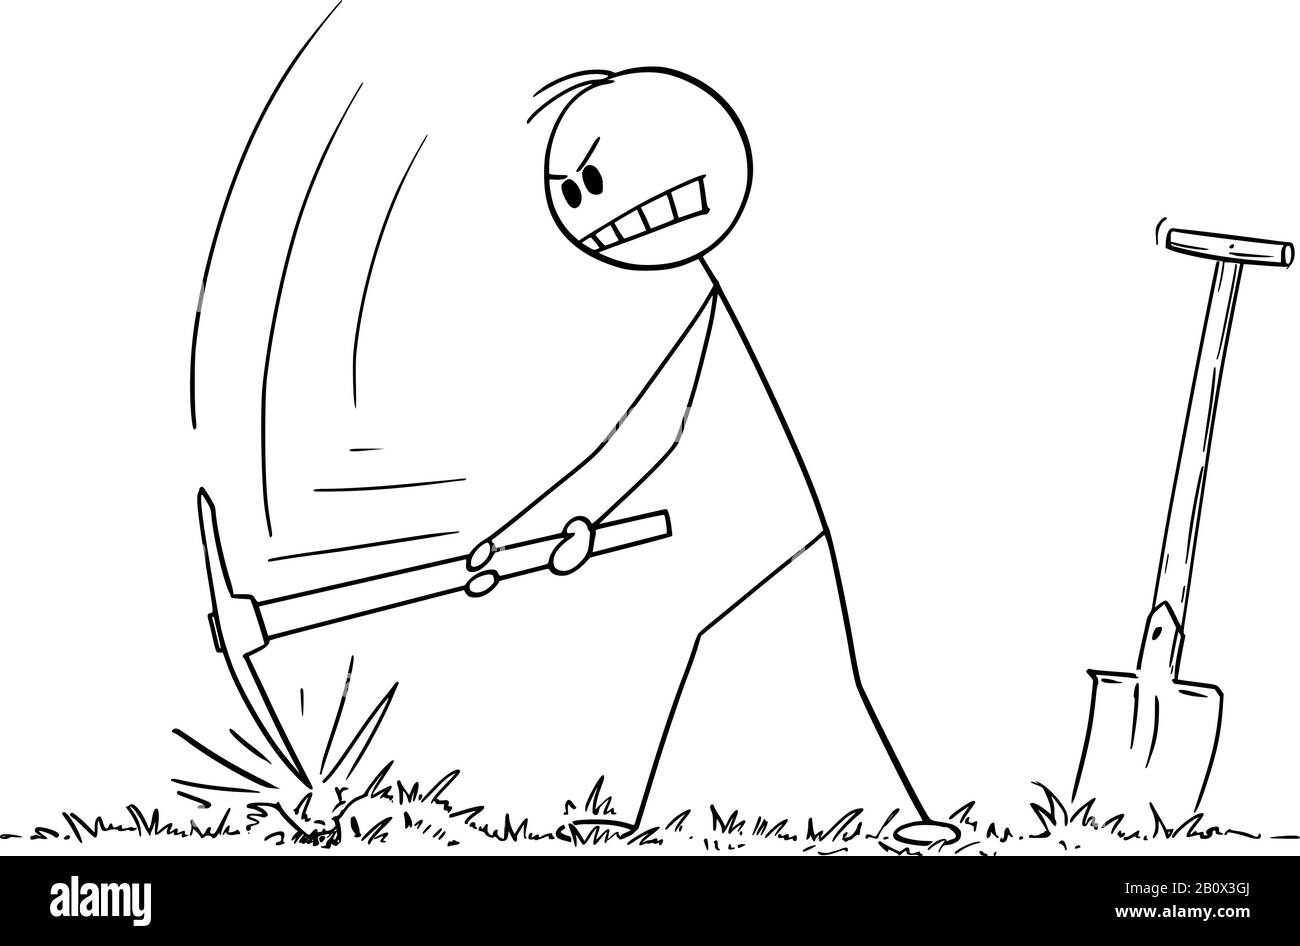 Vektor-Zeichentrickstickfigur Zeichnung konzeptionelle Abbildung des Mannes, der mit Pickax oder Picke ein Loch in den Boden gräbt. Stock Vektor